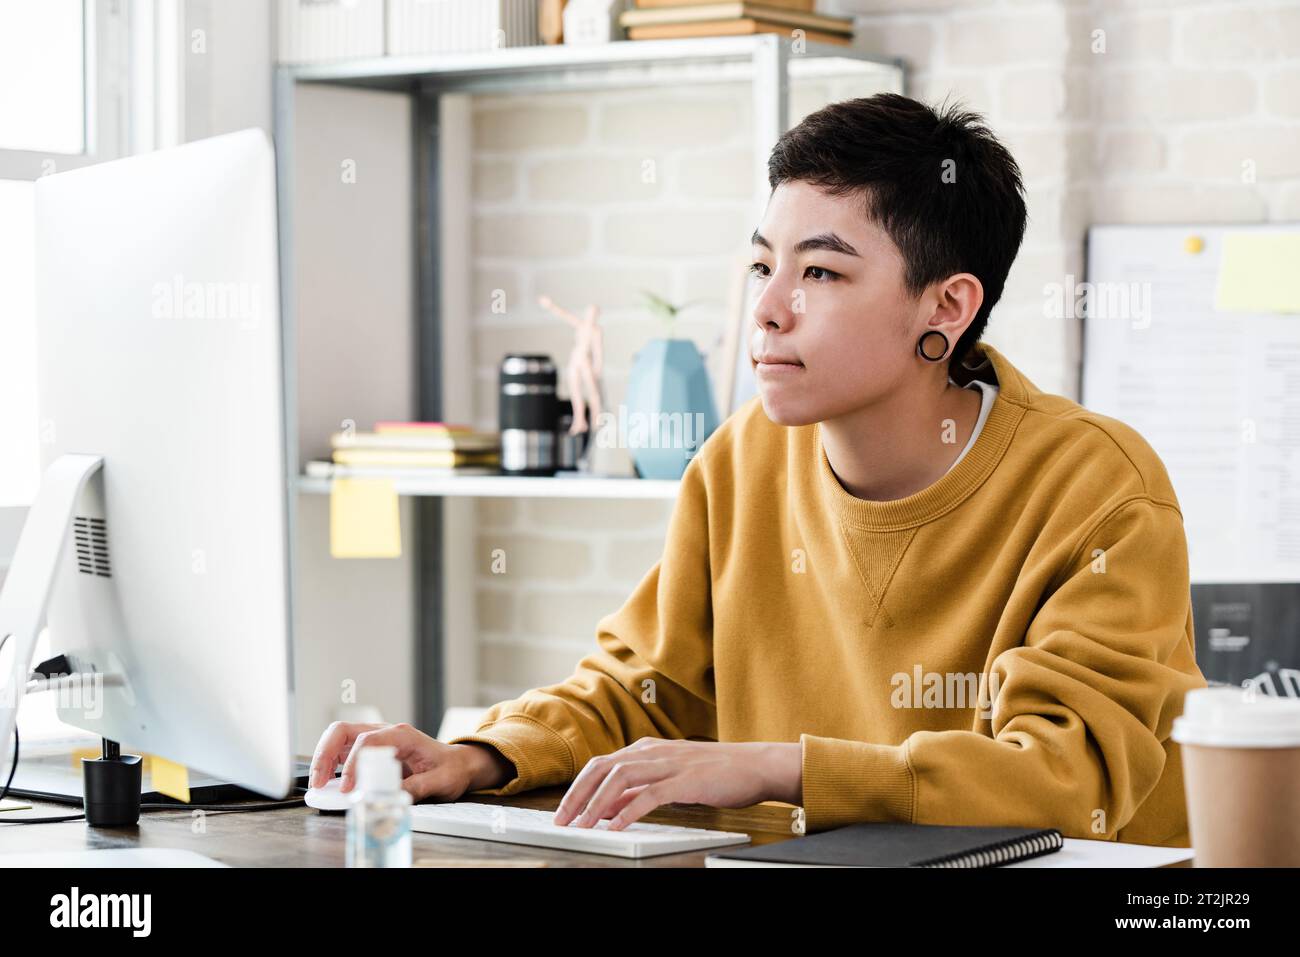 Jeune femme garçon manqué asiatique en tenue décontractée travaillant de la maison sur l'ordinateur Banque D'Images